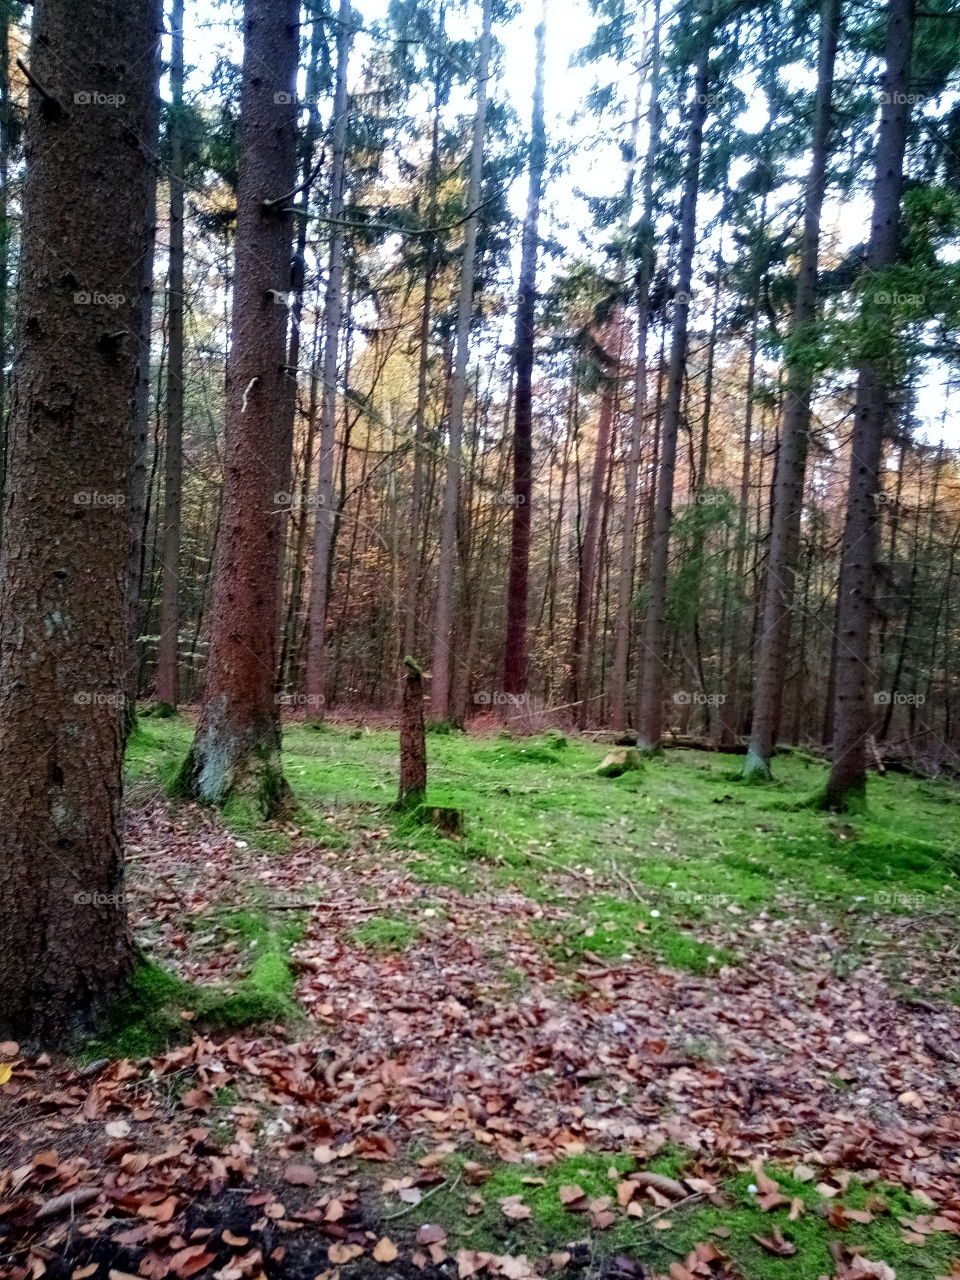 was schön wäre,ein Picknick auf dem saftig grünen Waldboden , barfuß laufen,nur leider etwas zu kalt,